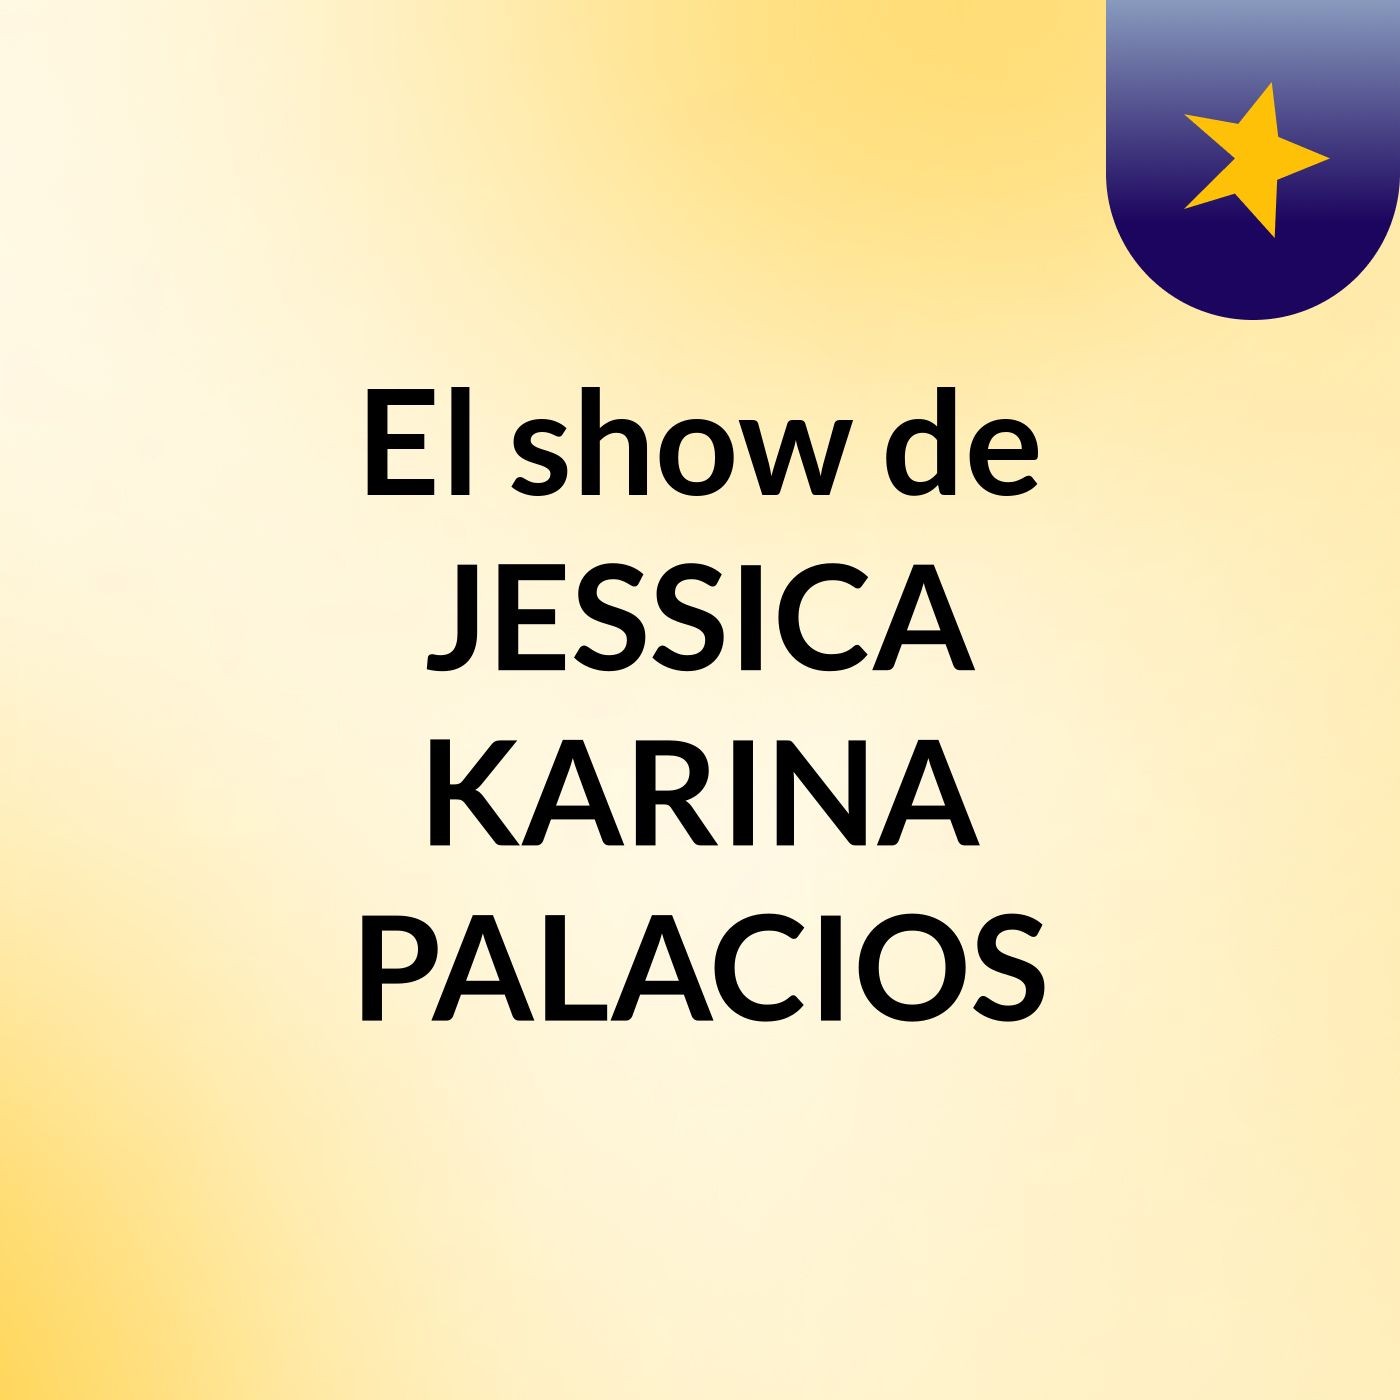 El show de JESSICA KARINA PALACIOS